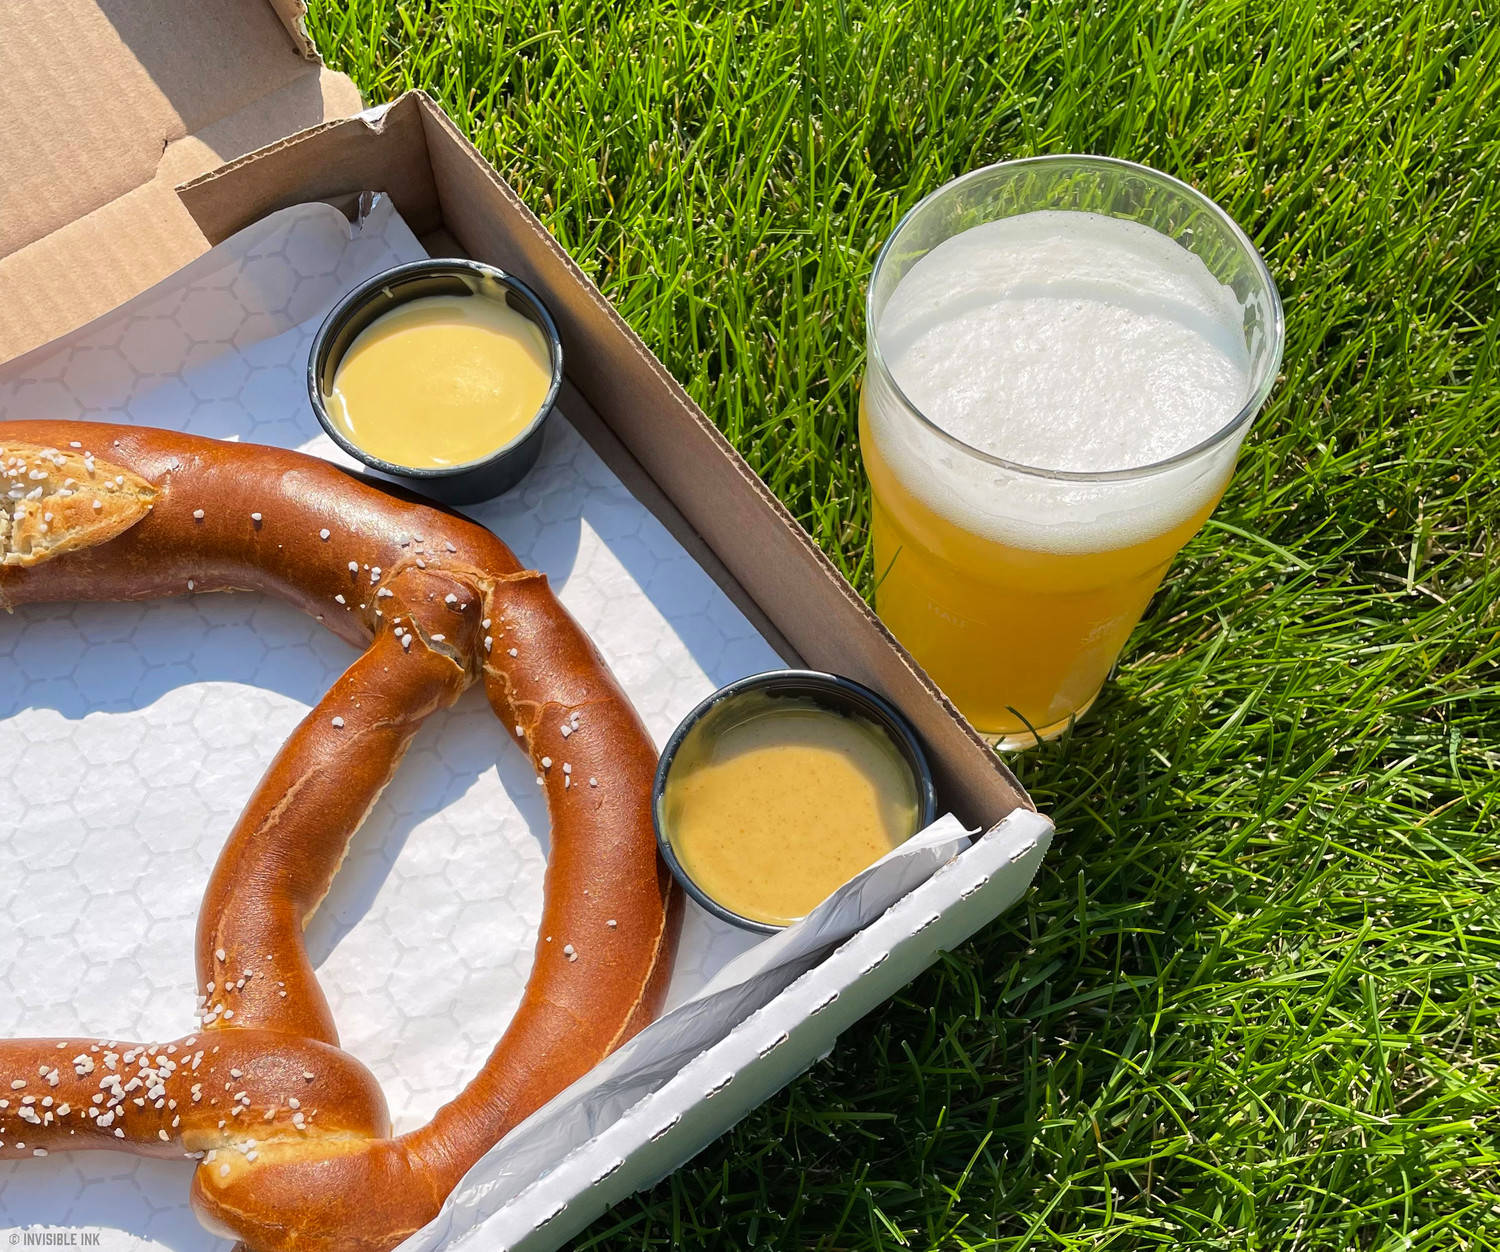 Giant pretzels & beer tasting